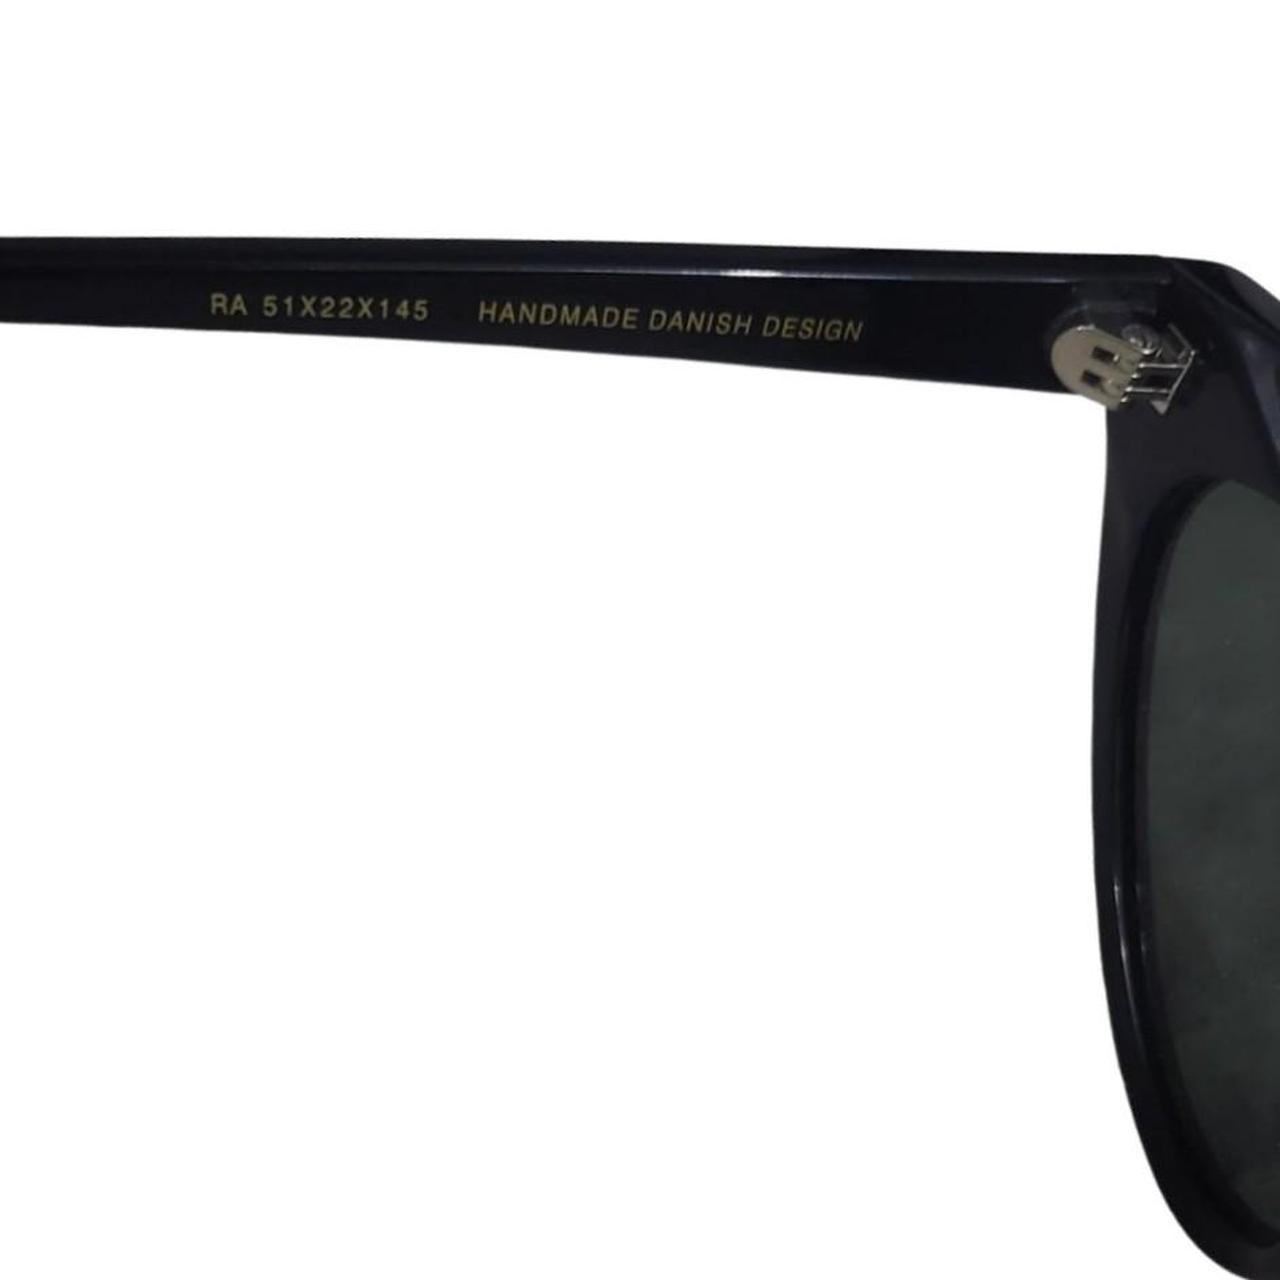 Product Image 4 - Han Kjobenhavn Race Black sunglasses

Han